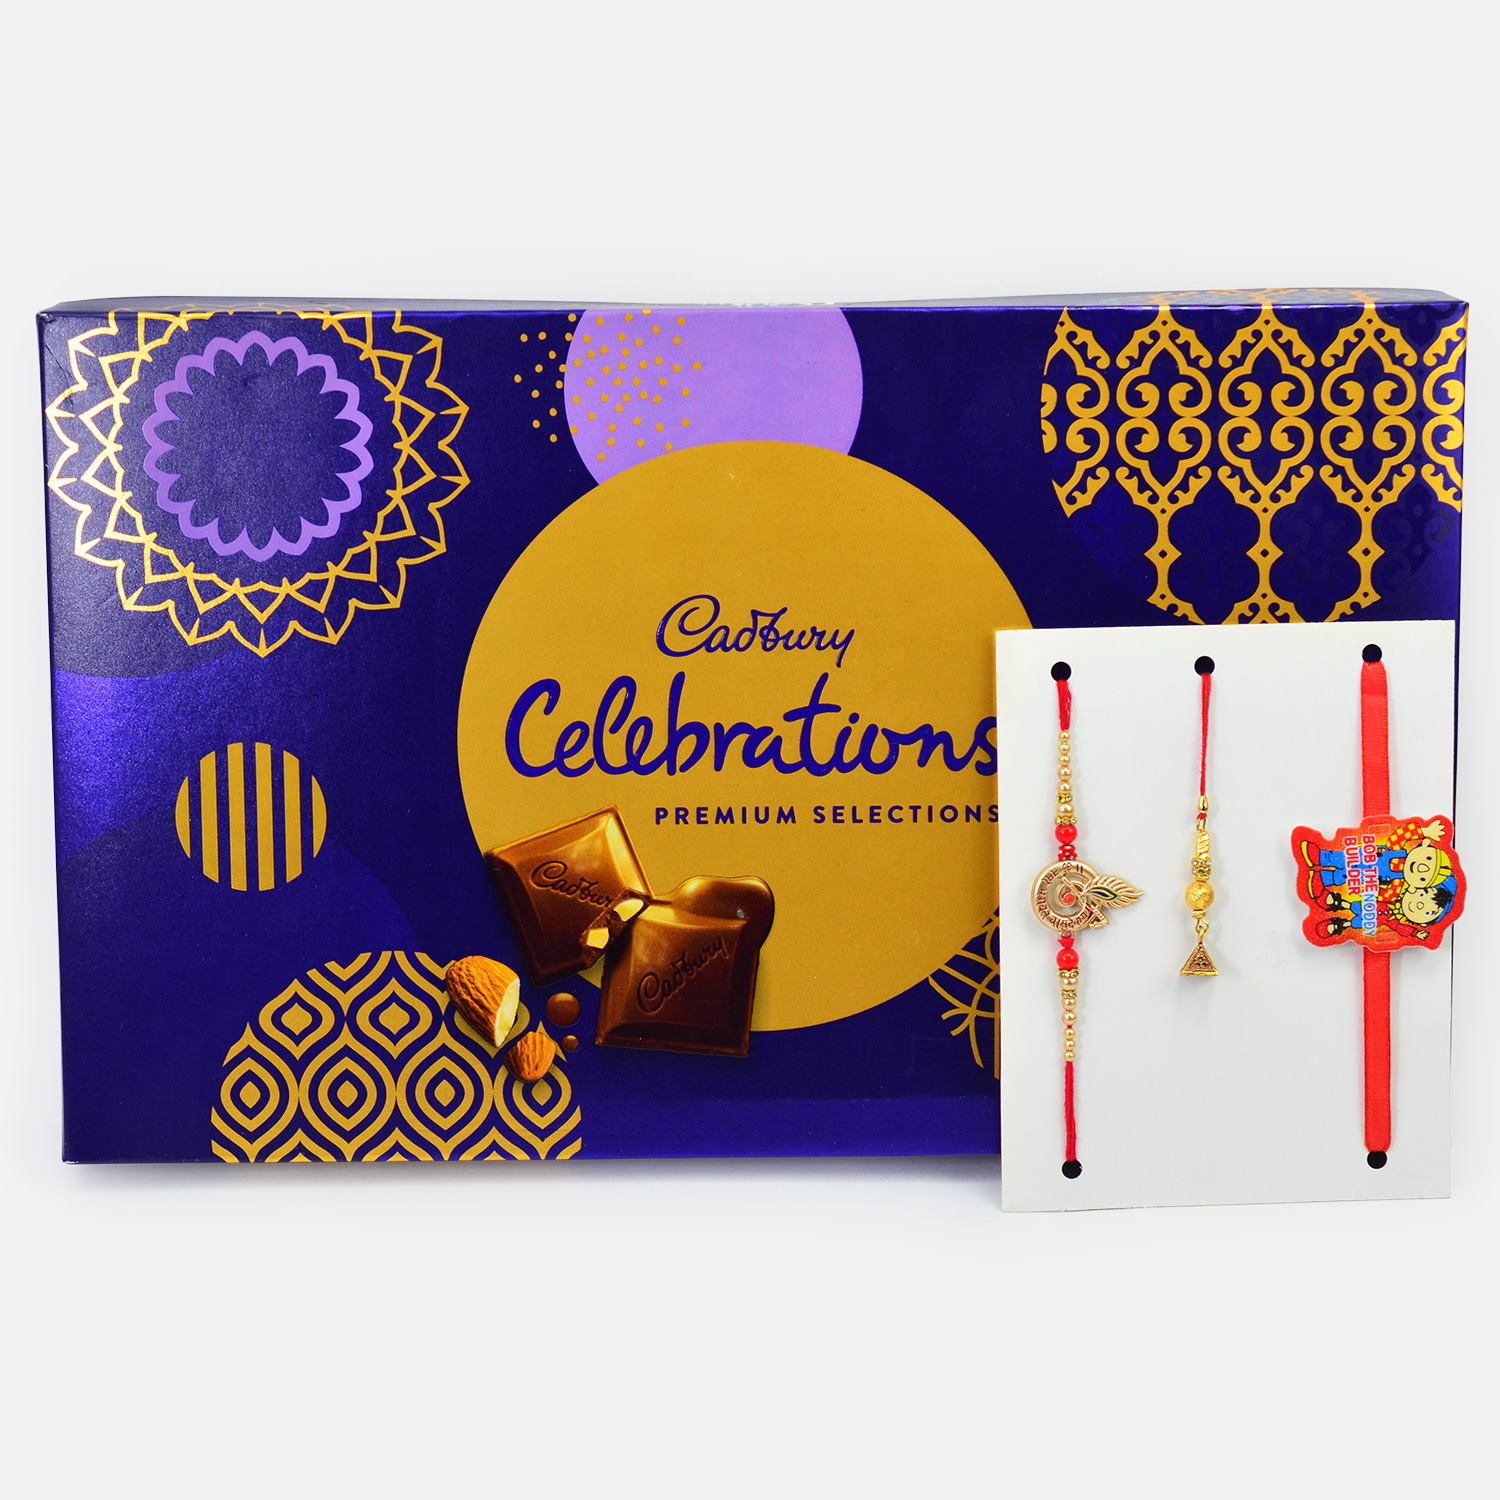 Stunning Amazing Rakhi Set of 3 for Family with Premium Chocolates Celebration Pack